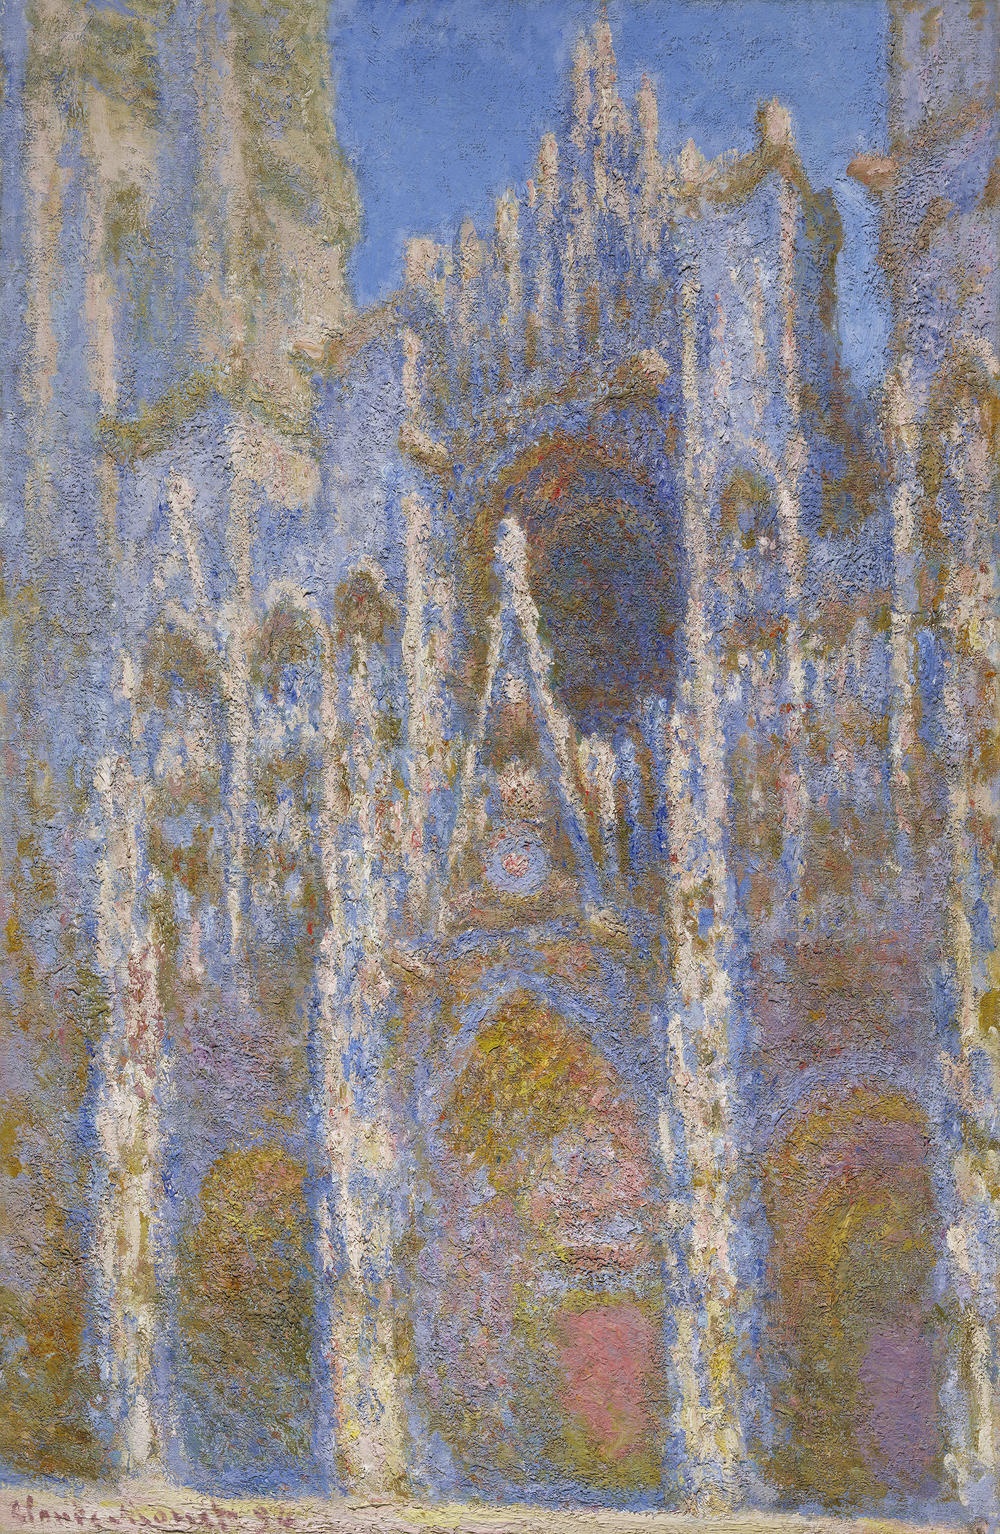 Monet's <em>Rouen Cathedral, Façade,</em> 1894